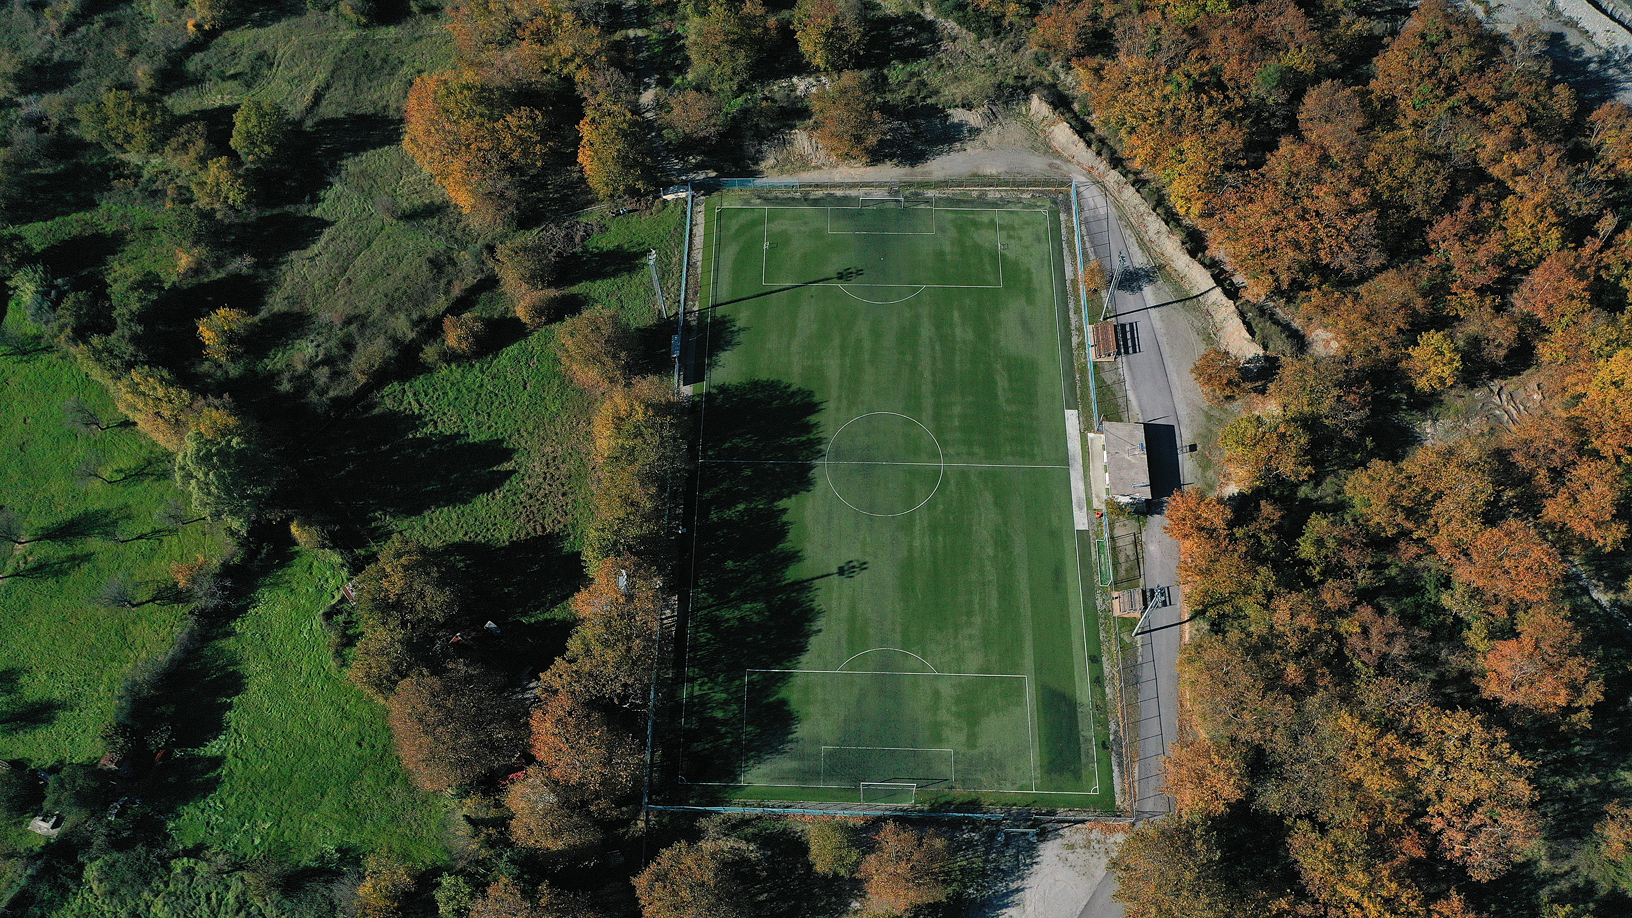 Ποδοσφαιρικό γήπεδο, χωριό Μονόδρυ. Φωτογραφία: ©Βασίλης Συκάς, για τον Δήμο Κύμης-Αλιβερίου